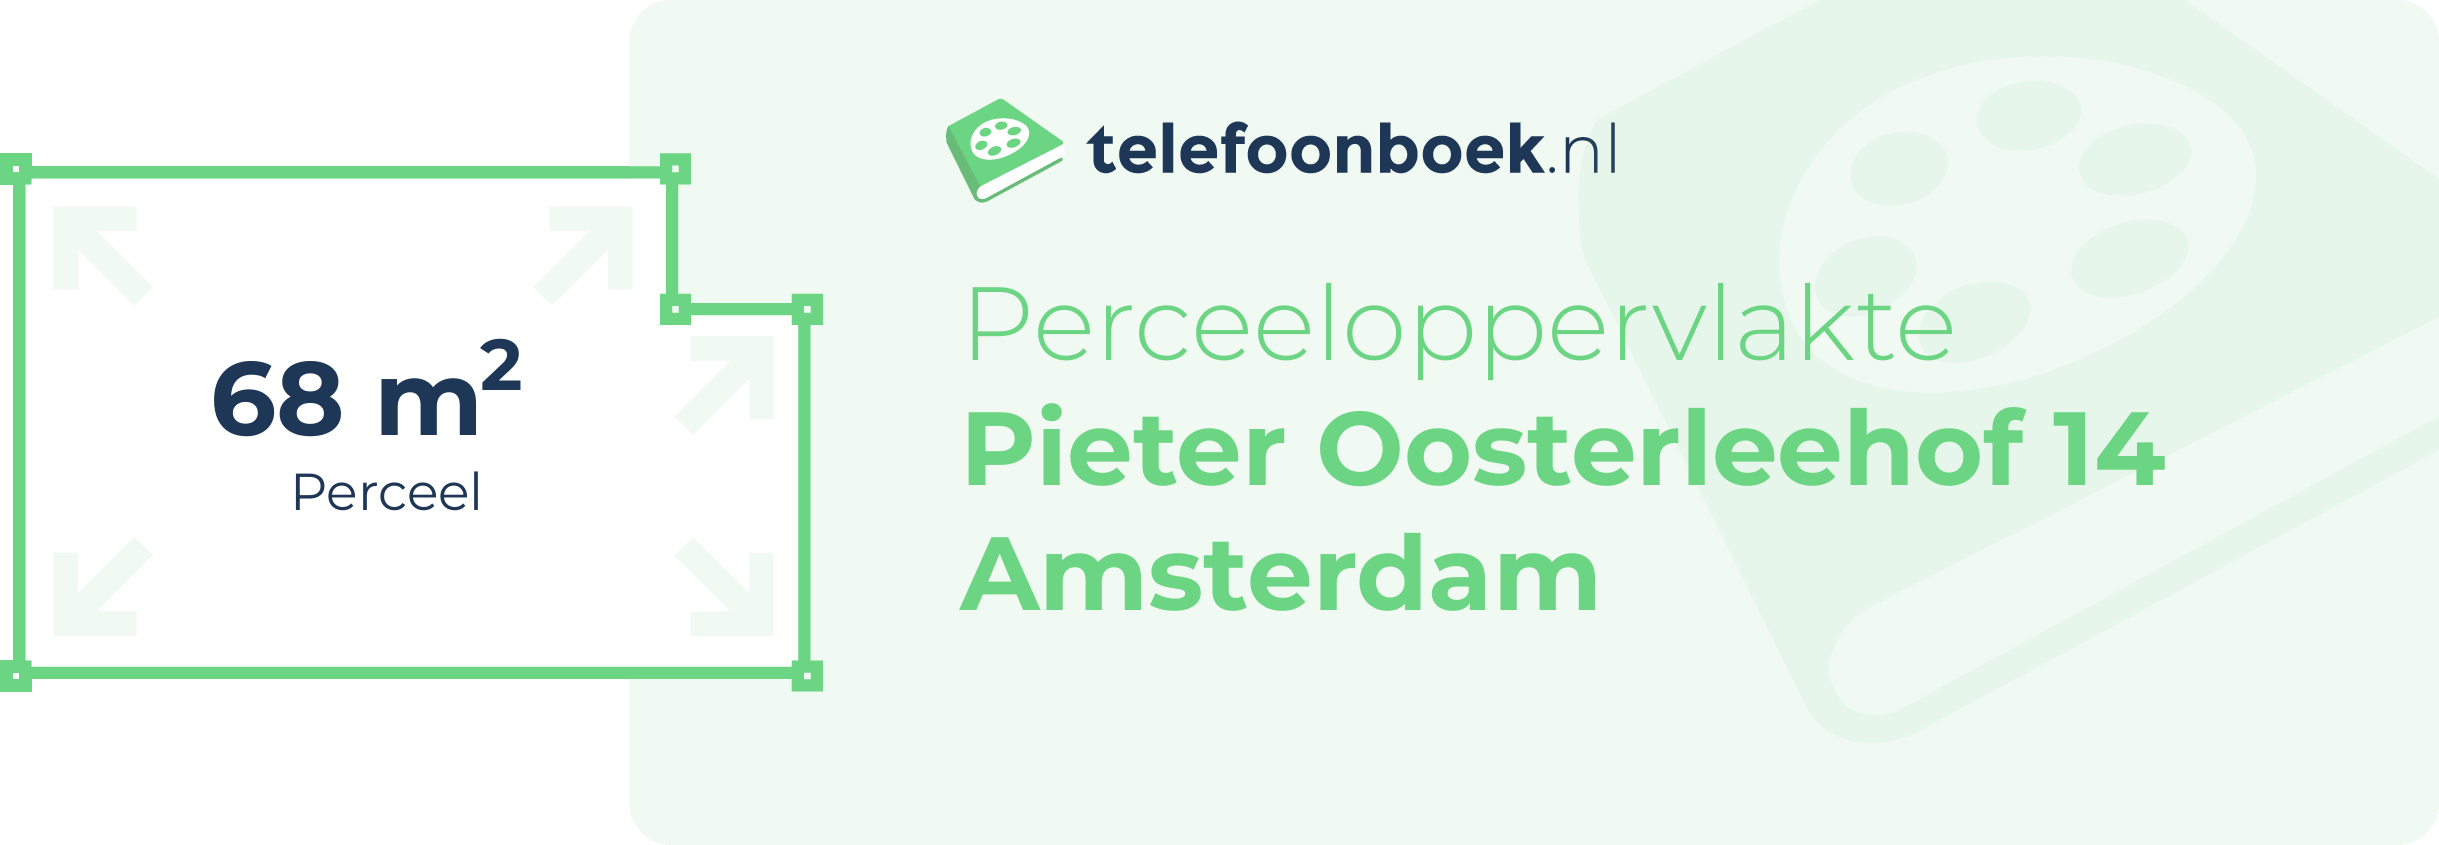 Perceeloppervlakte Pieter Oosterleehof 14 Amsterdam